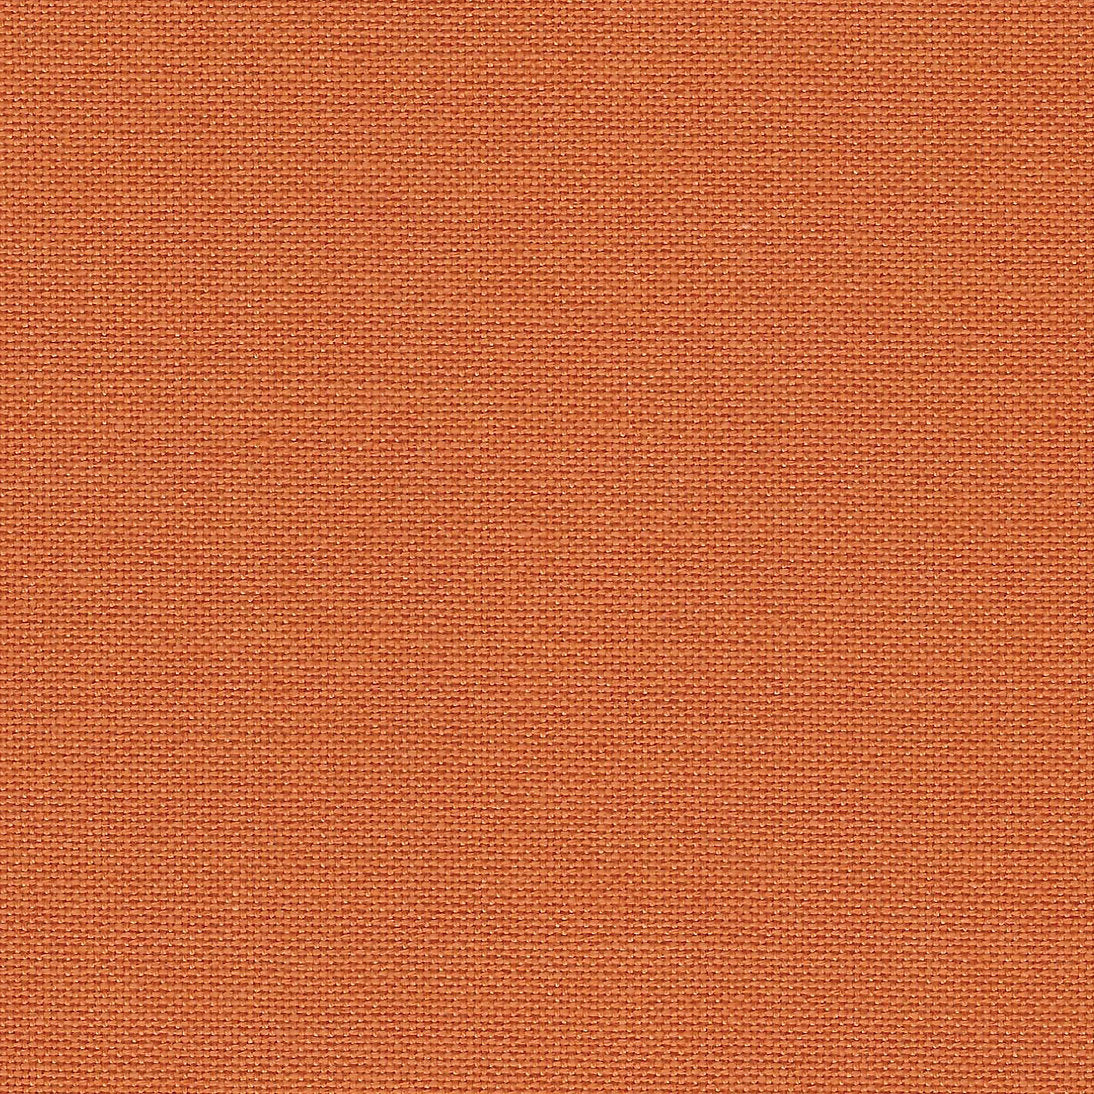 Murano Lugana fabric 32 ct. Pumpkin Zweigart 3984/4010